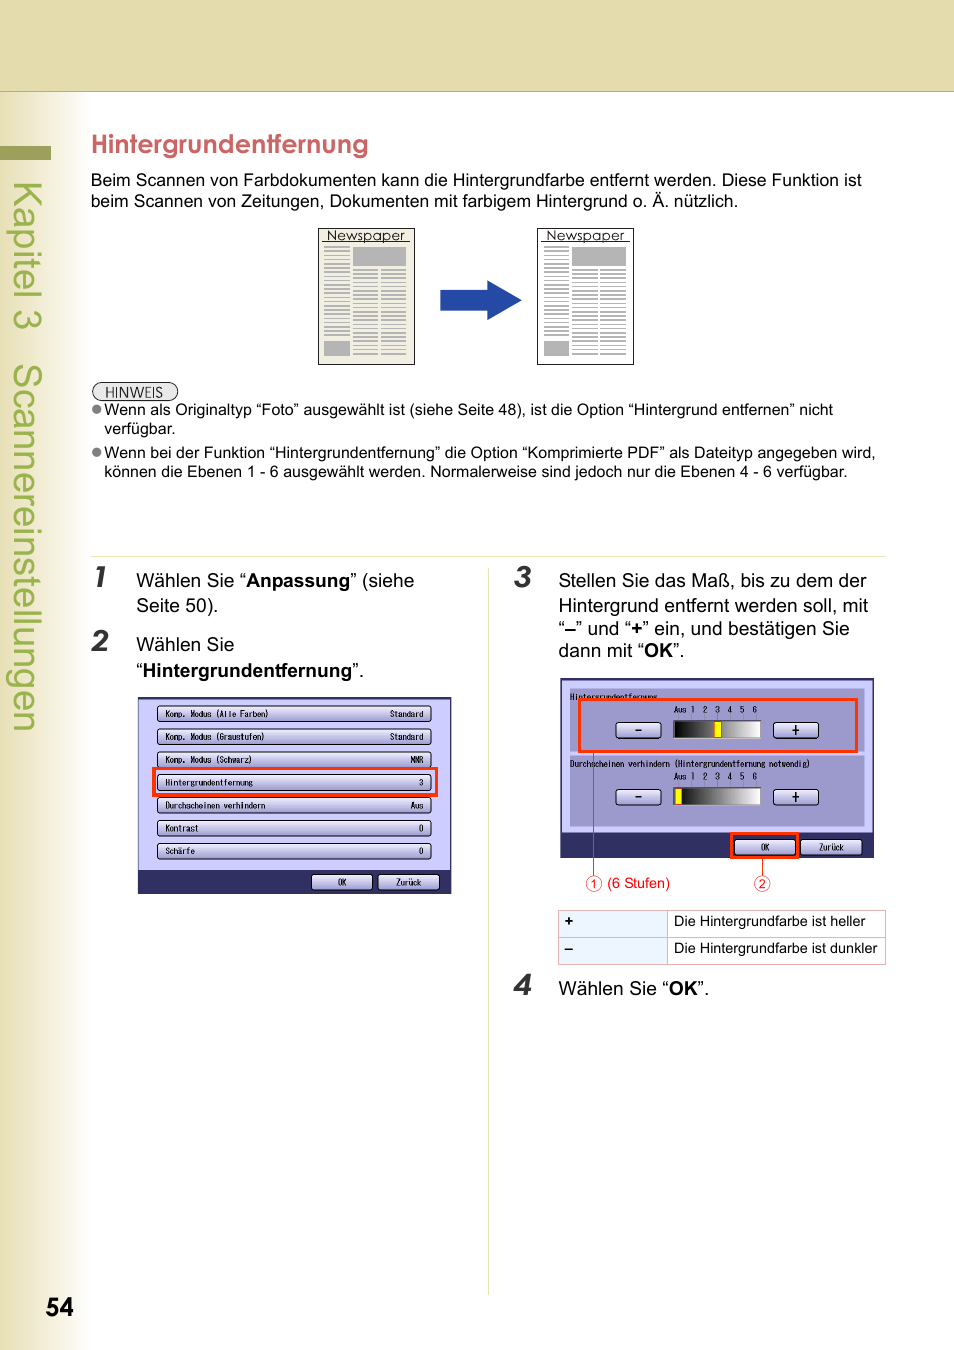 Hintergrundentfernung, Kapitel 3 scannereinstellungen, 54 hintergrundentfernung | Panasonic DPC266 Benutzerhandbuch | Seite 54 / 74